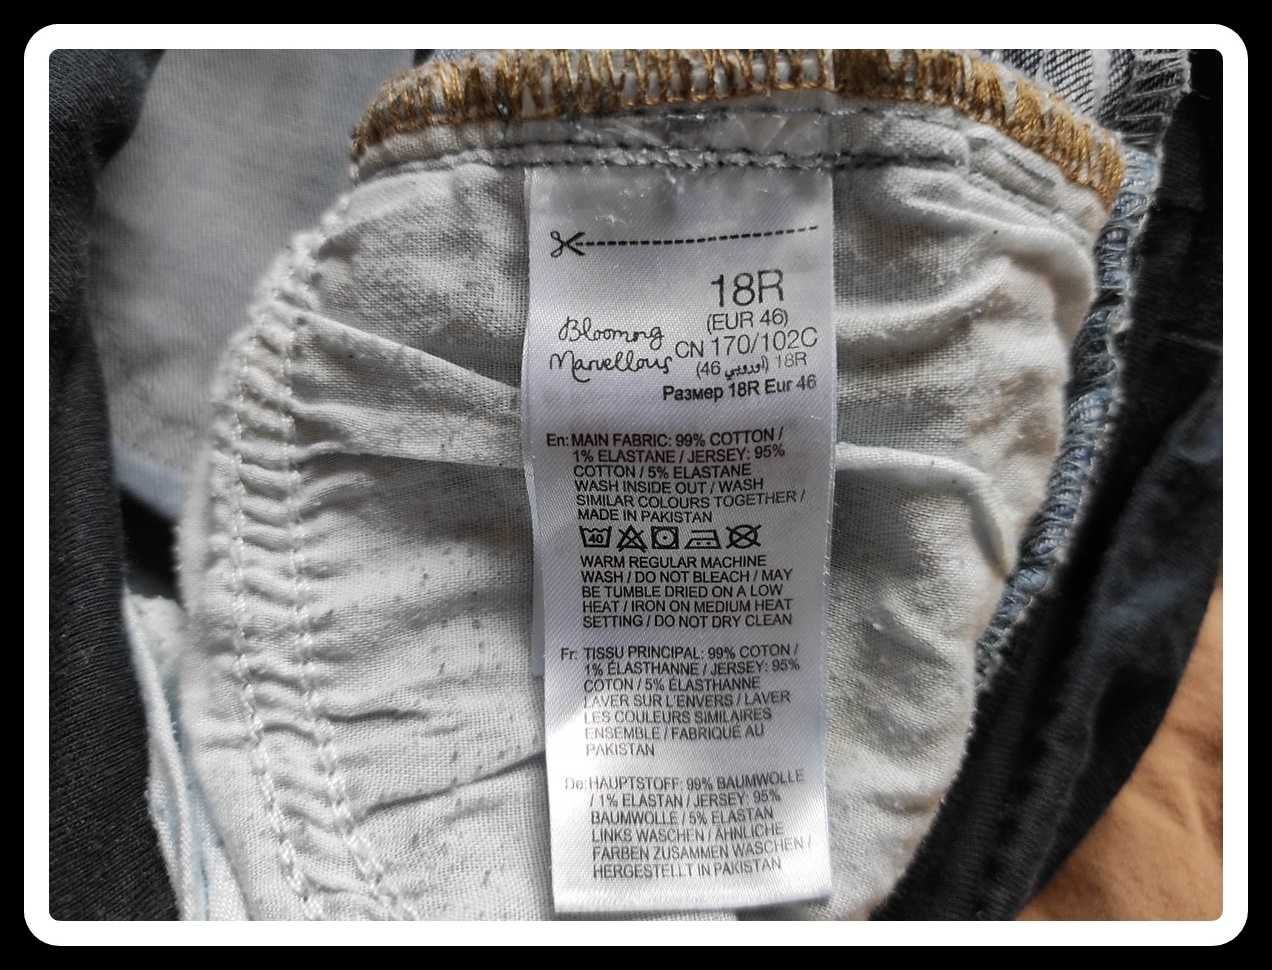 Spodnie ciążowe jeansowe z wysokim panelem 46 XXXL